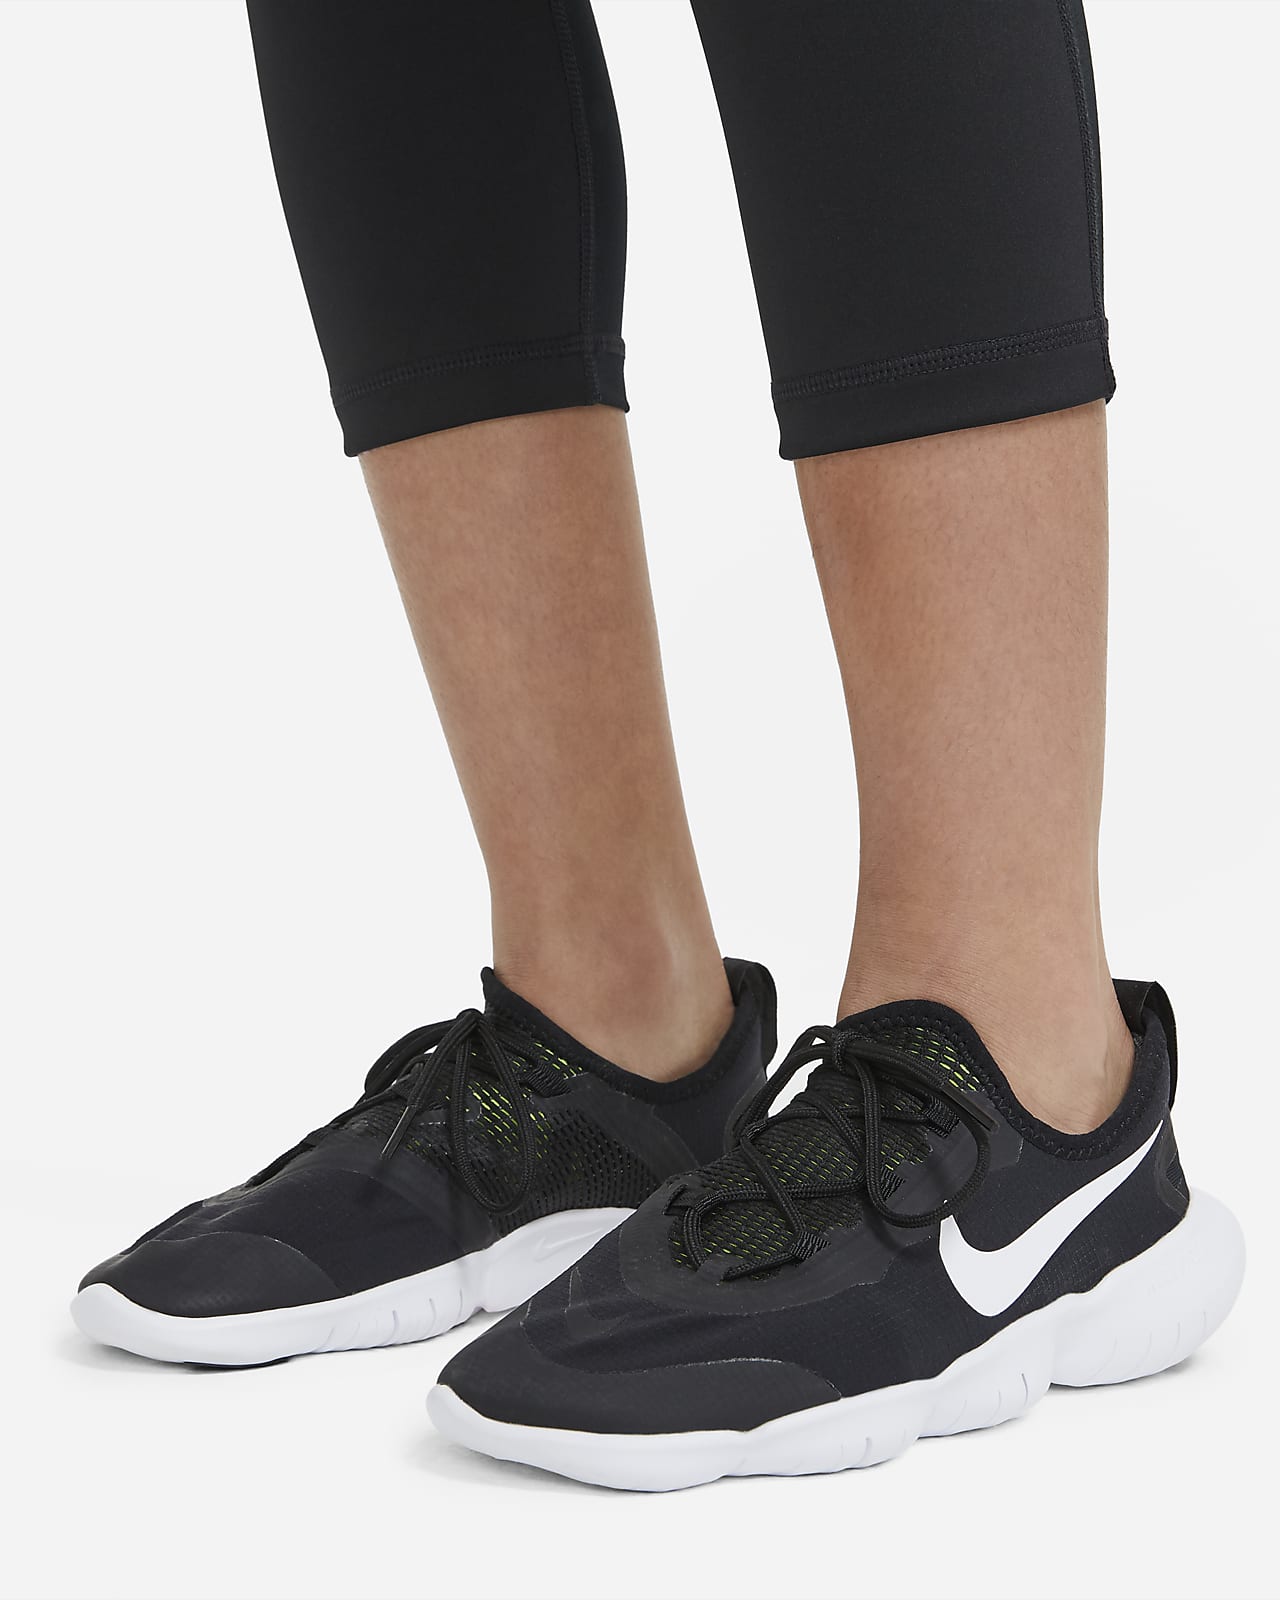 Nike Pro Dri-Fit Capri Leggings Black & White Coral - Depop